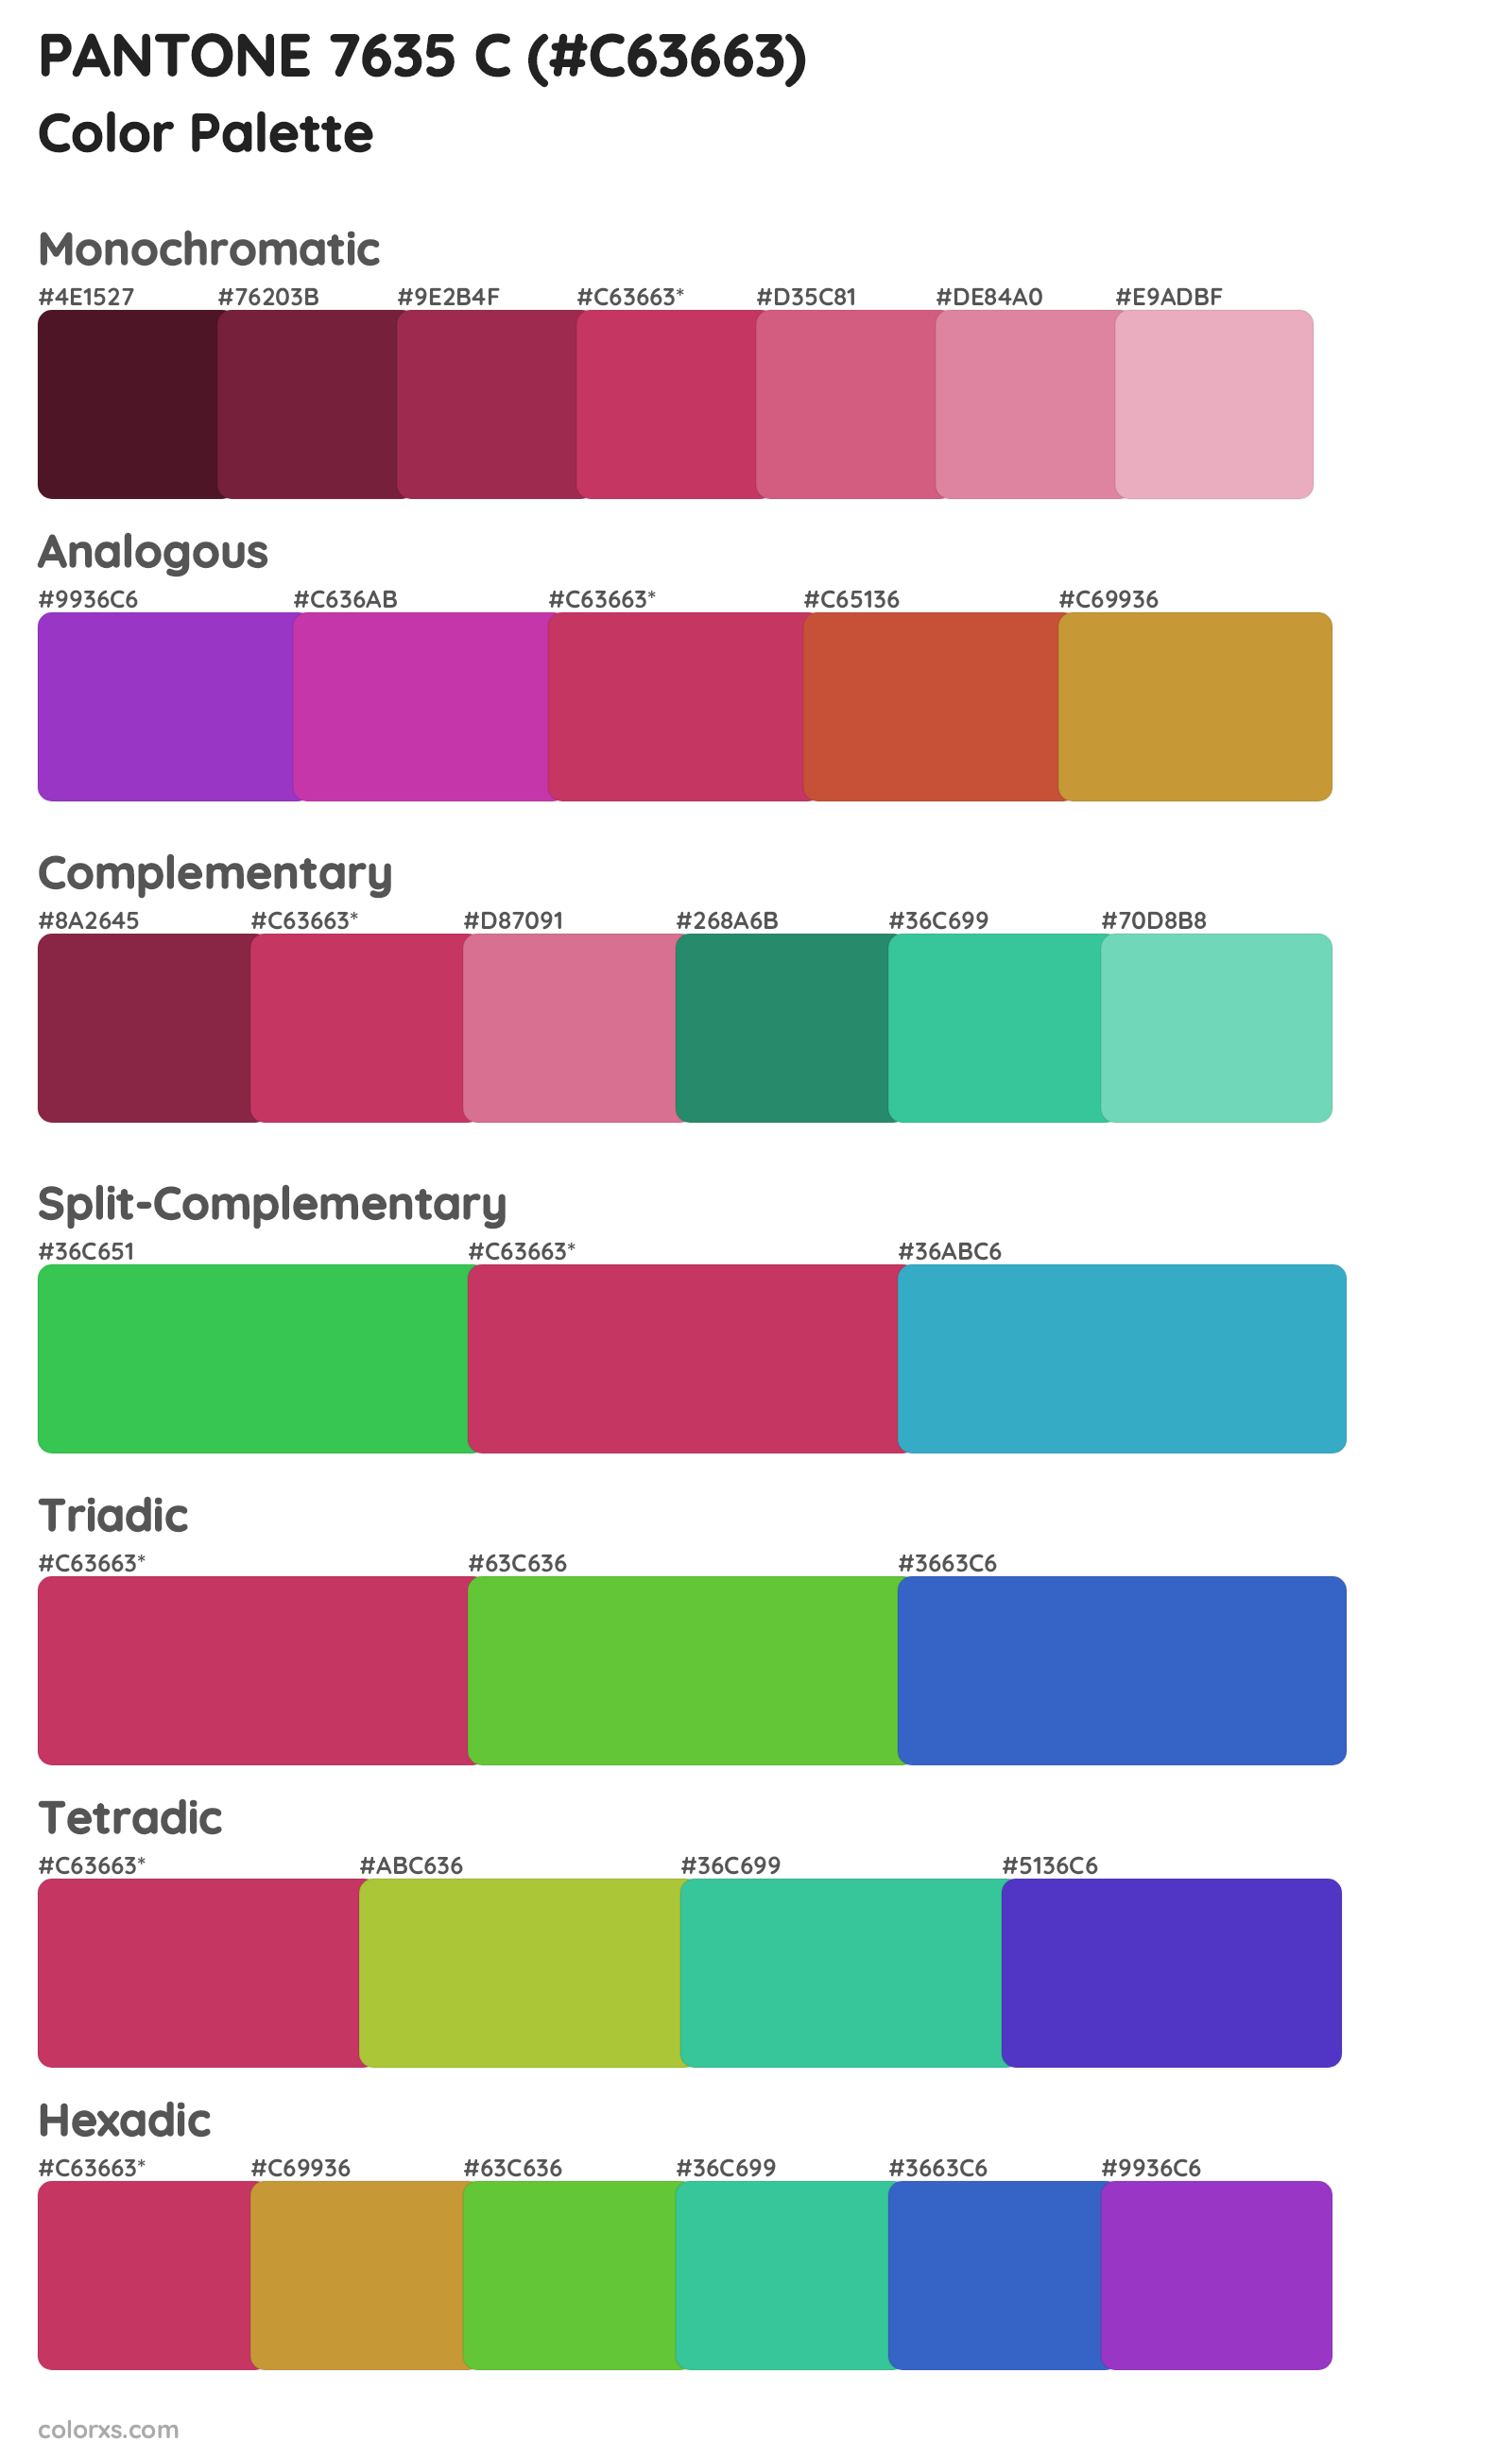 PANTONE 7635 C Color Scheme Palettes